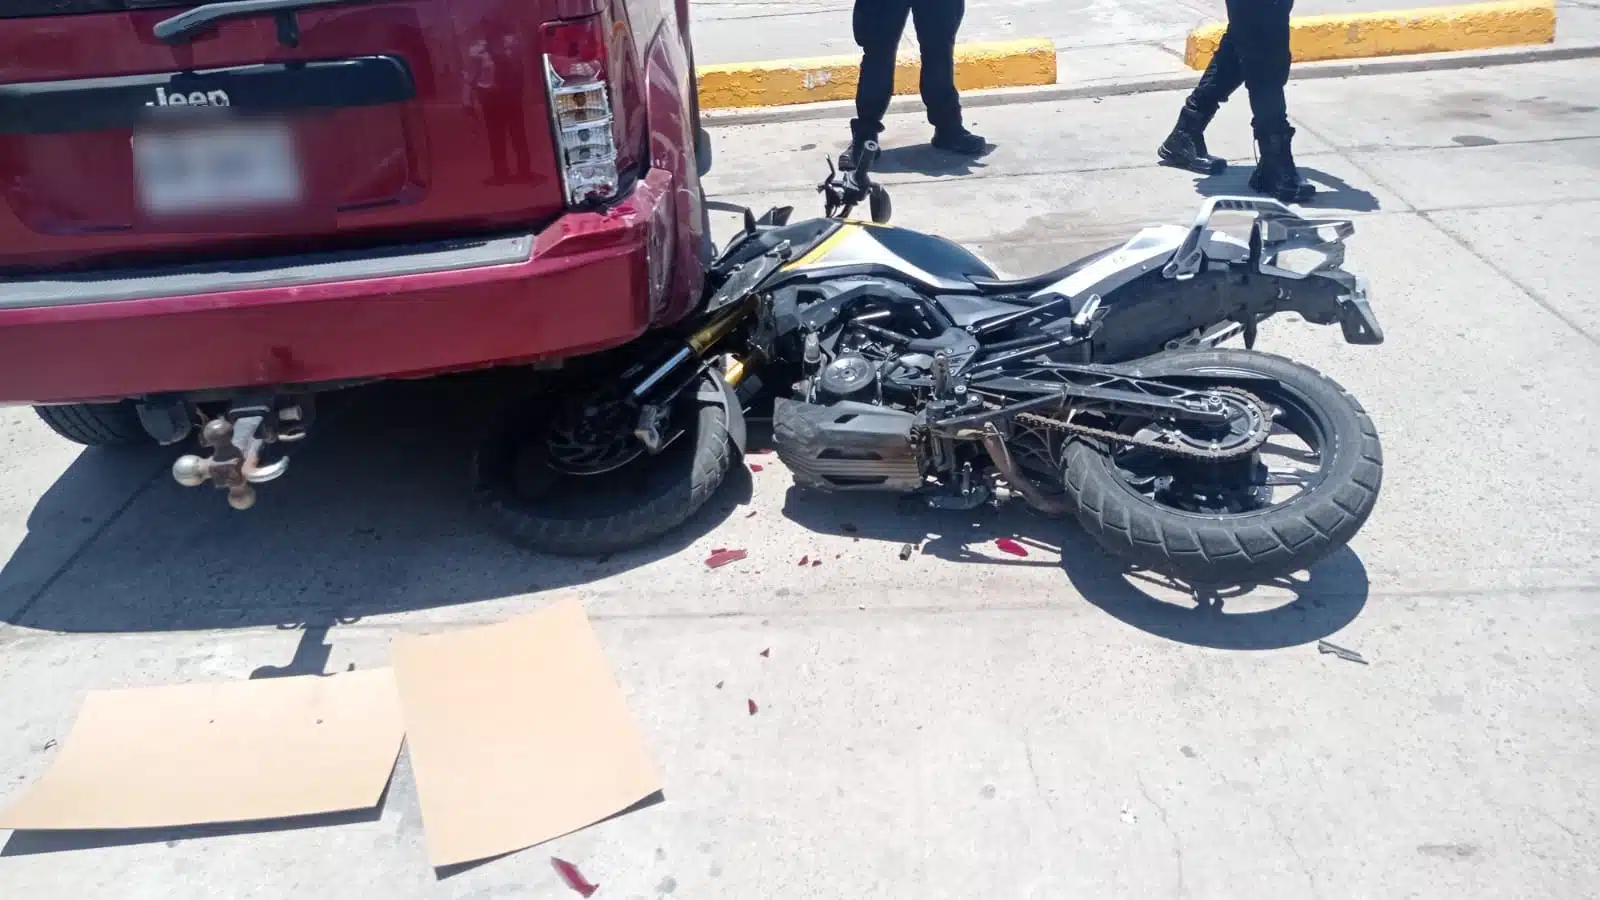 Motocicleta tirada junto a una camioneta roja